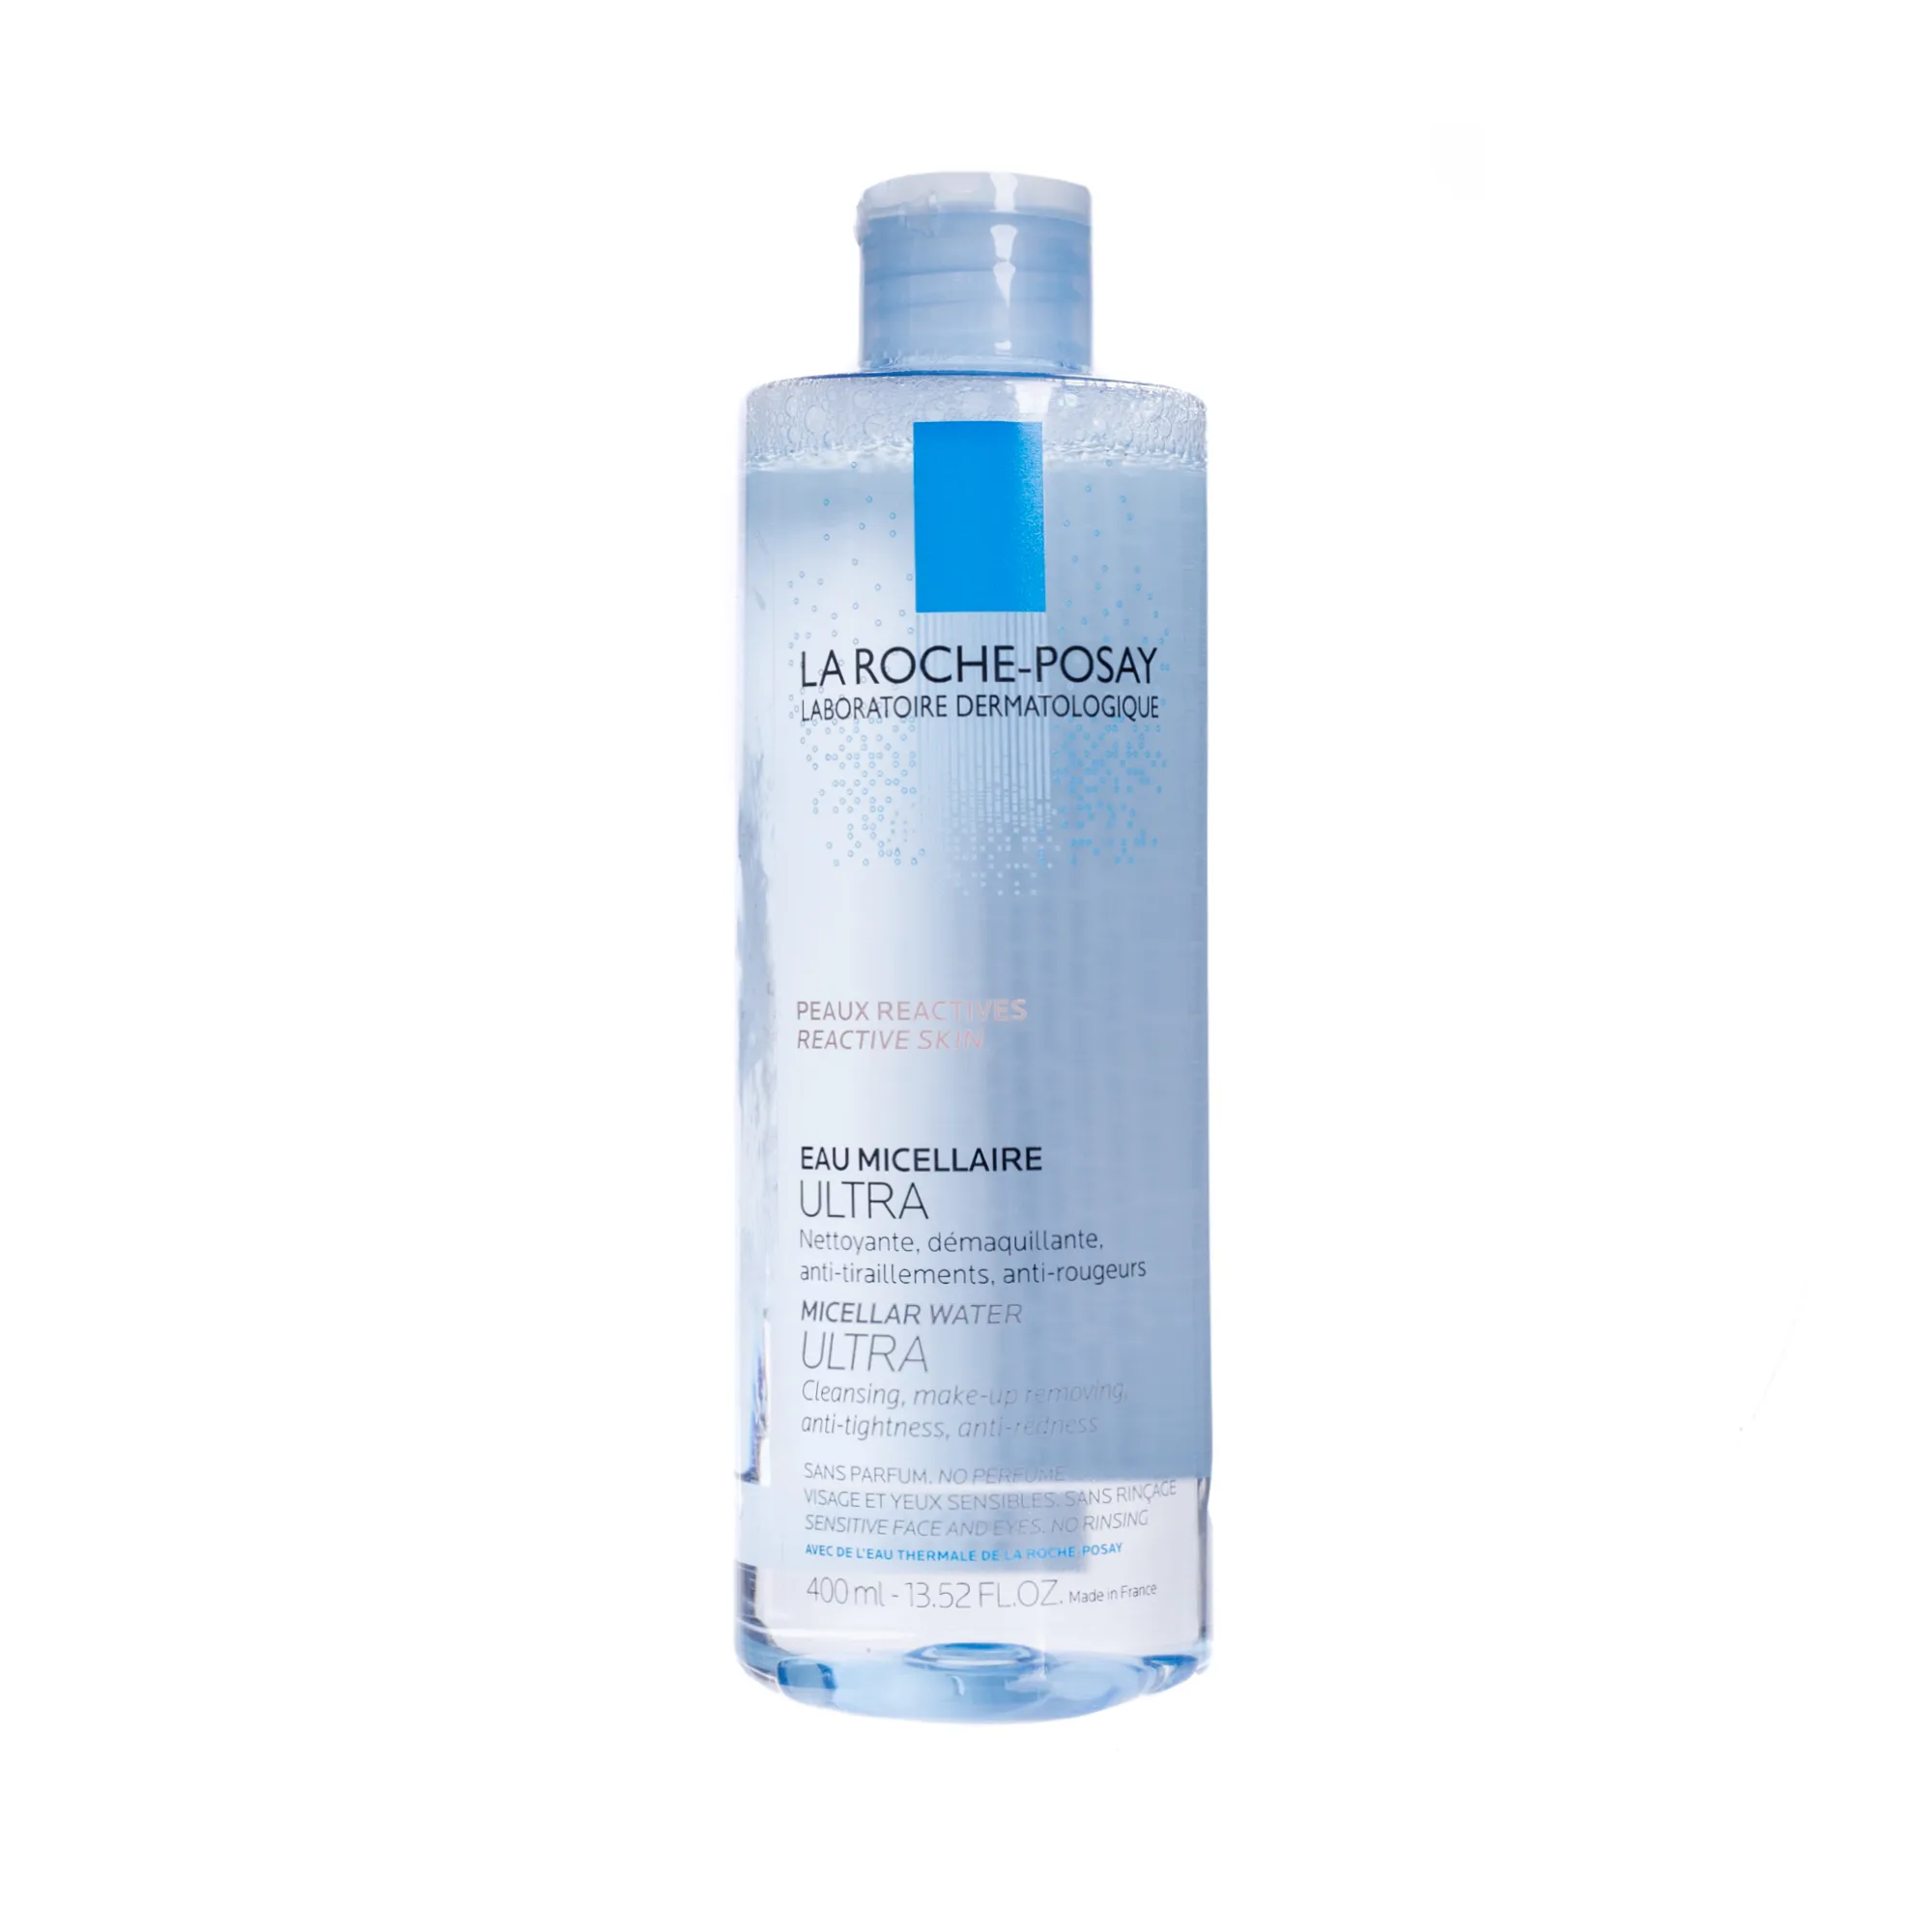 La Roche-Posay, ultra woda micelarna, skóra bardzo wrażliwa, reaktywna, 400 ml 